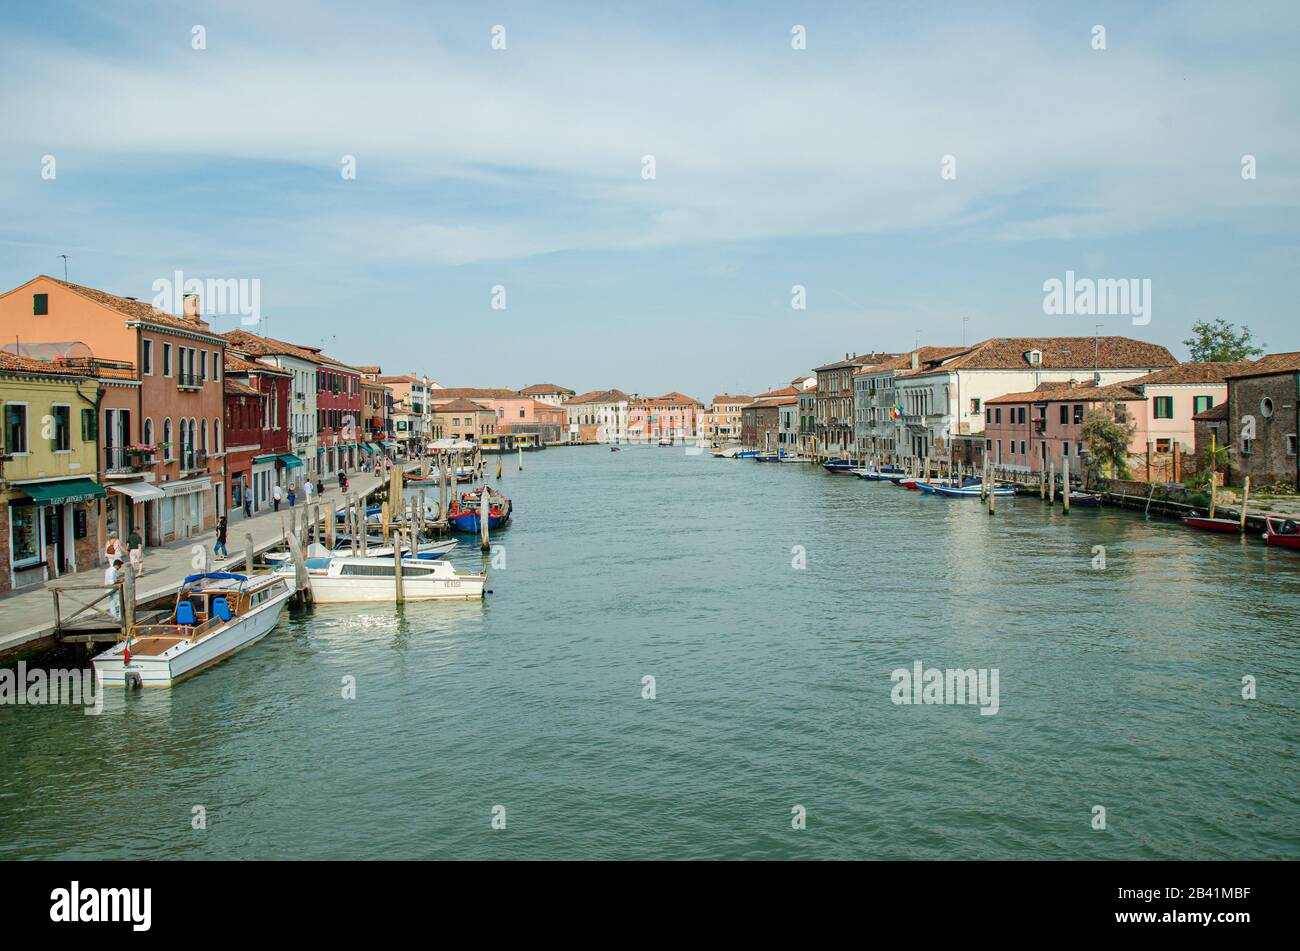 Venezia, Italia 18 maggio 2015: Vista dei bellissimi canali e delle barche ormeggiate lungo le passerelle di Venezia Foto Stock